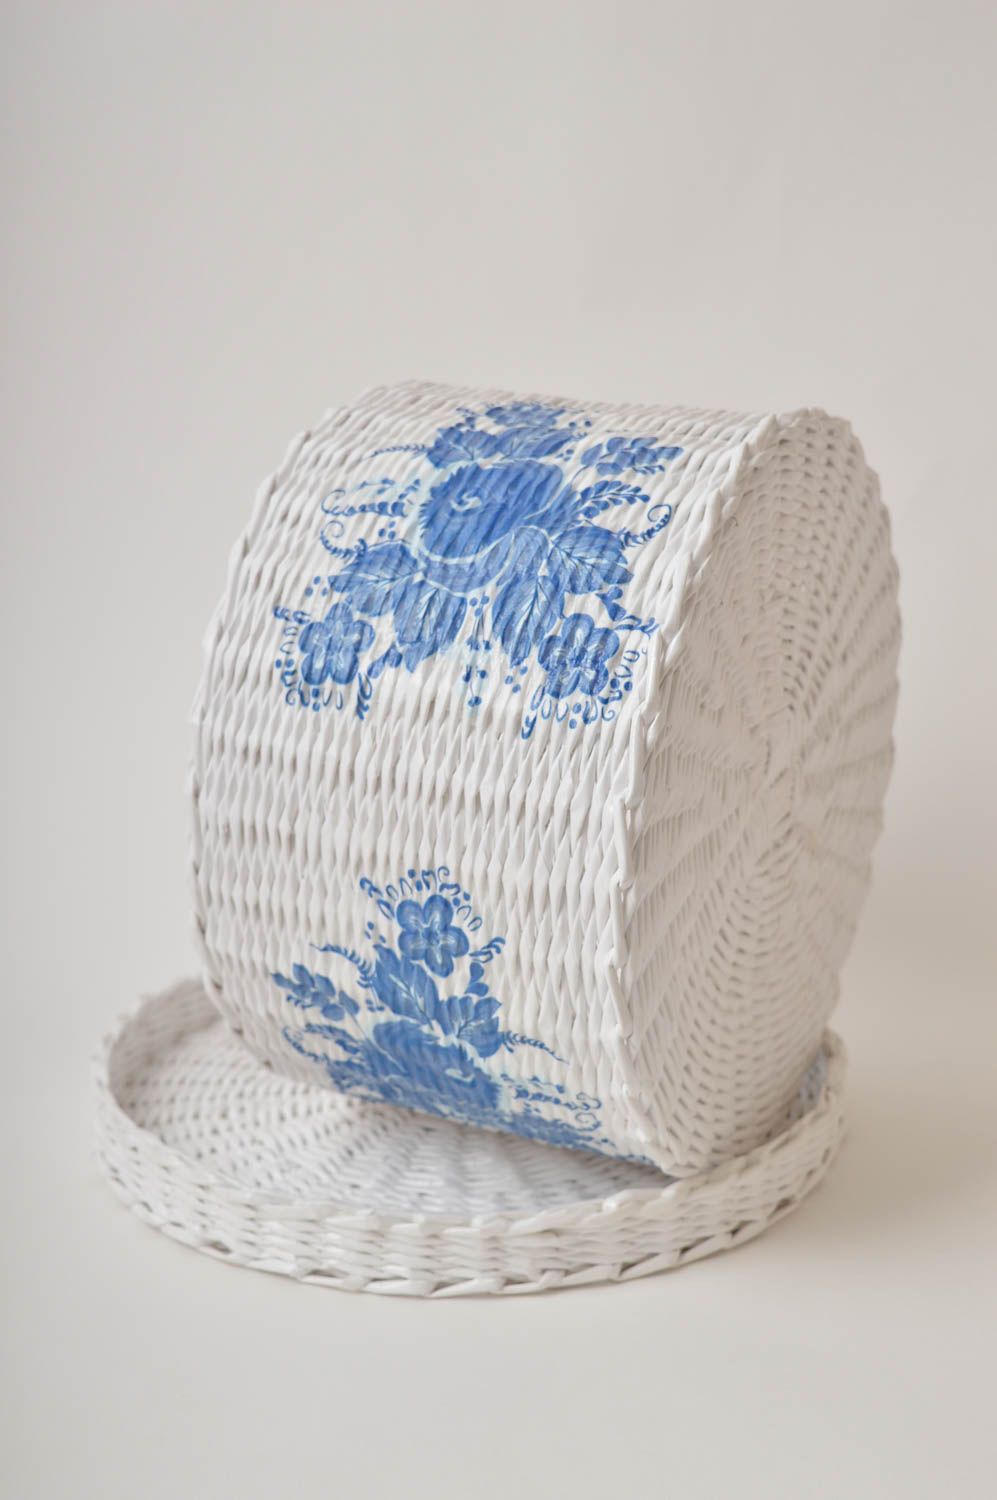 Homemade home decor woven basket small basket souvenir ideas gifts for women photo 4